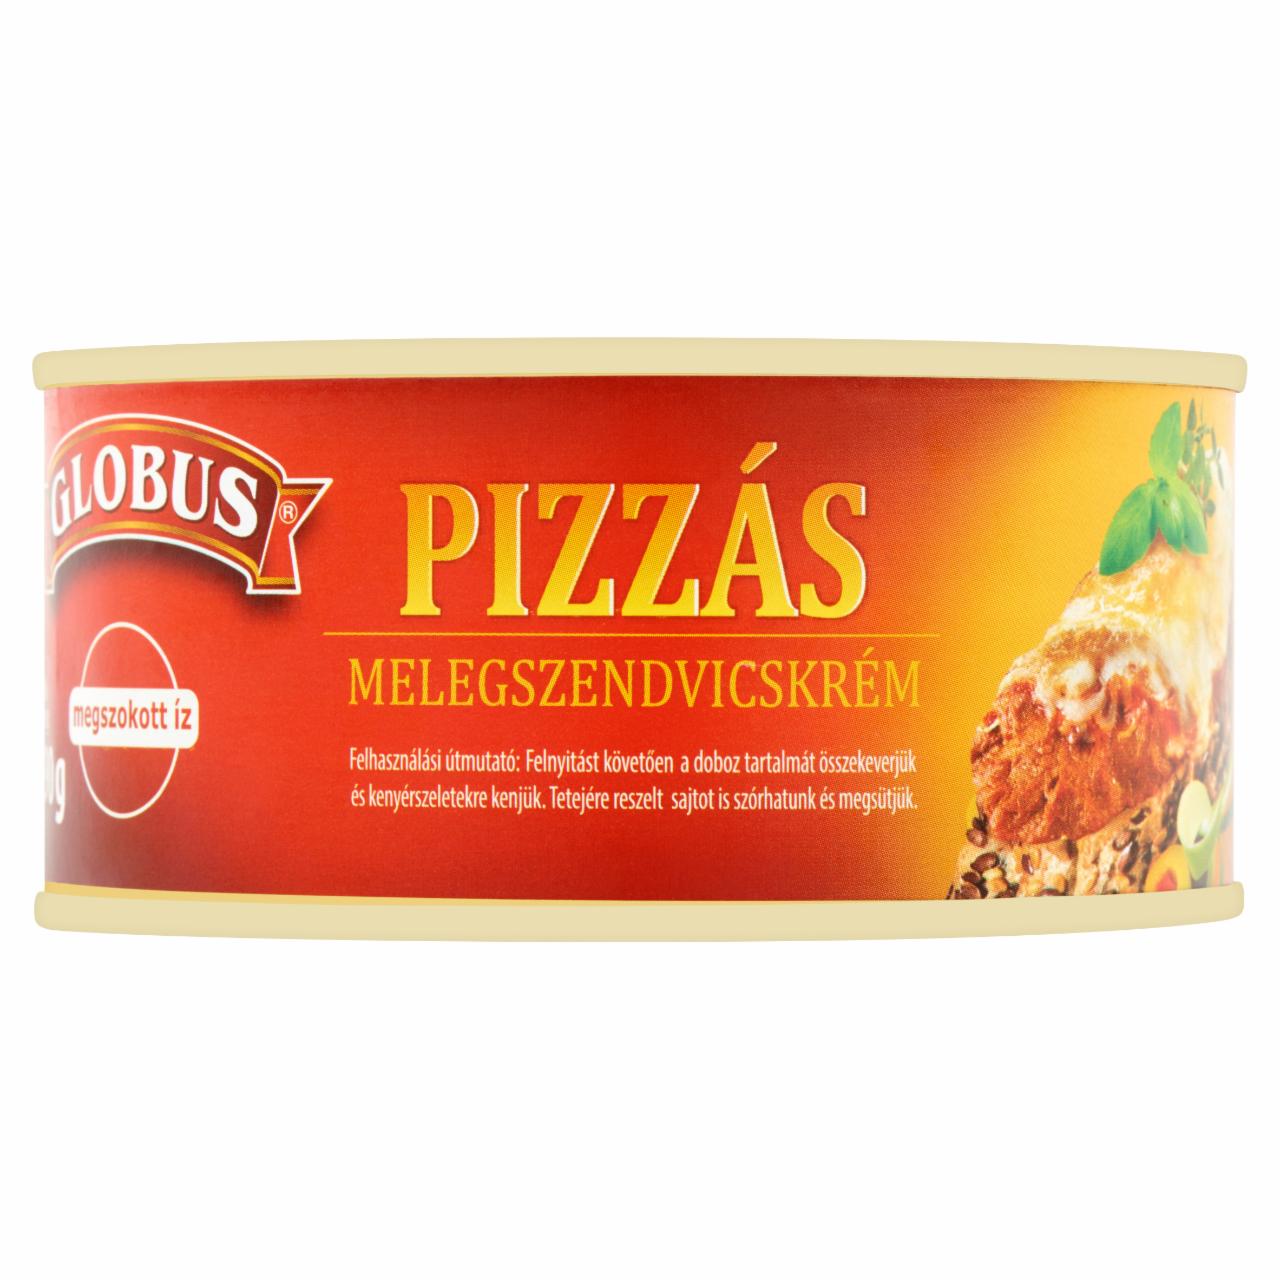 Képek - Globus pizzás melegszendvicskrém 290 g